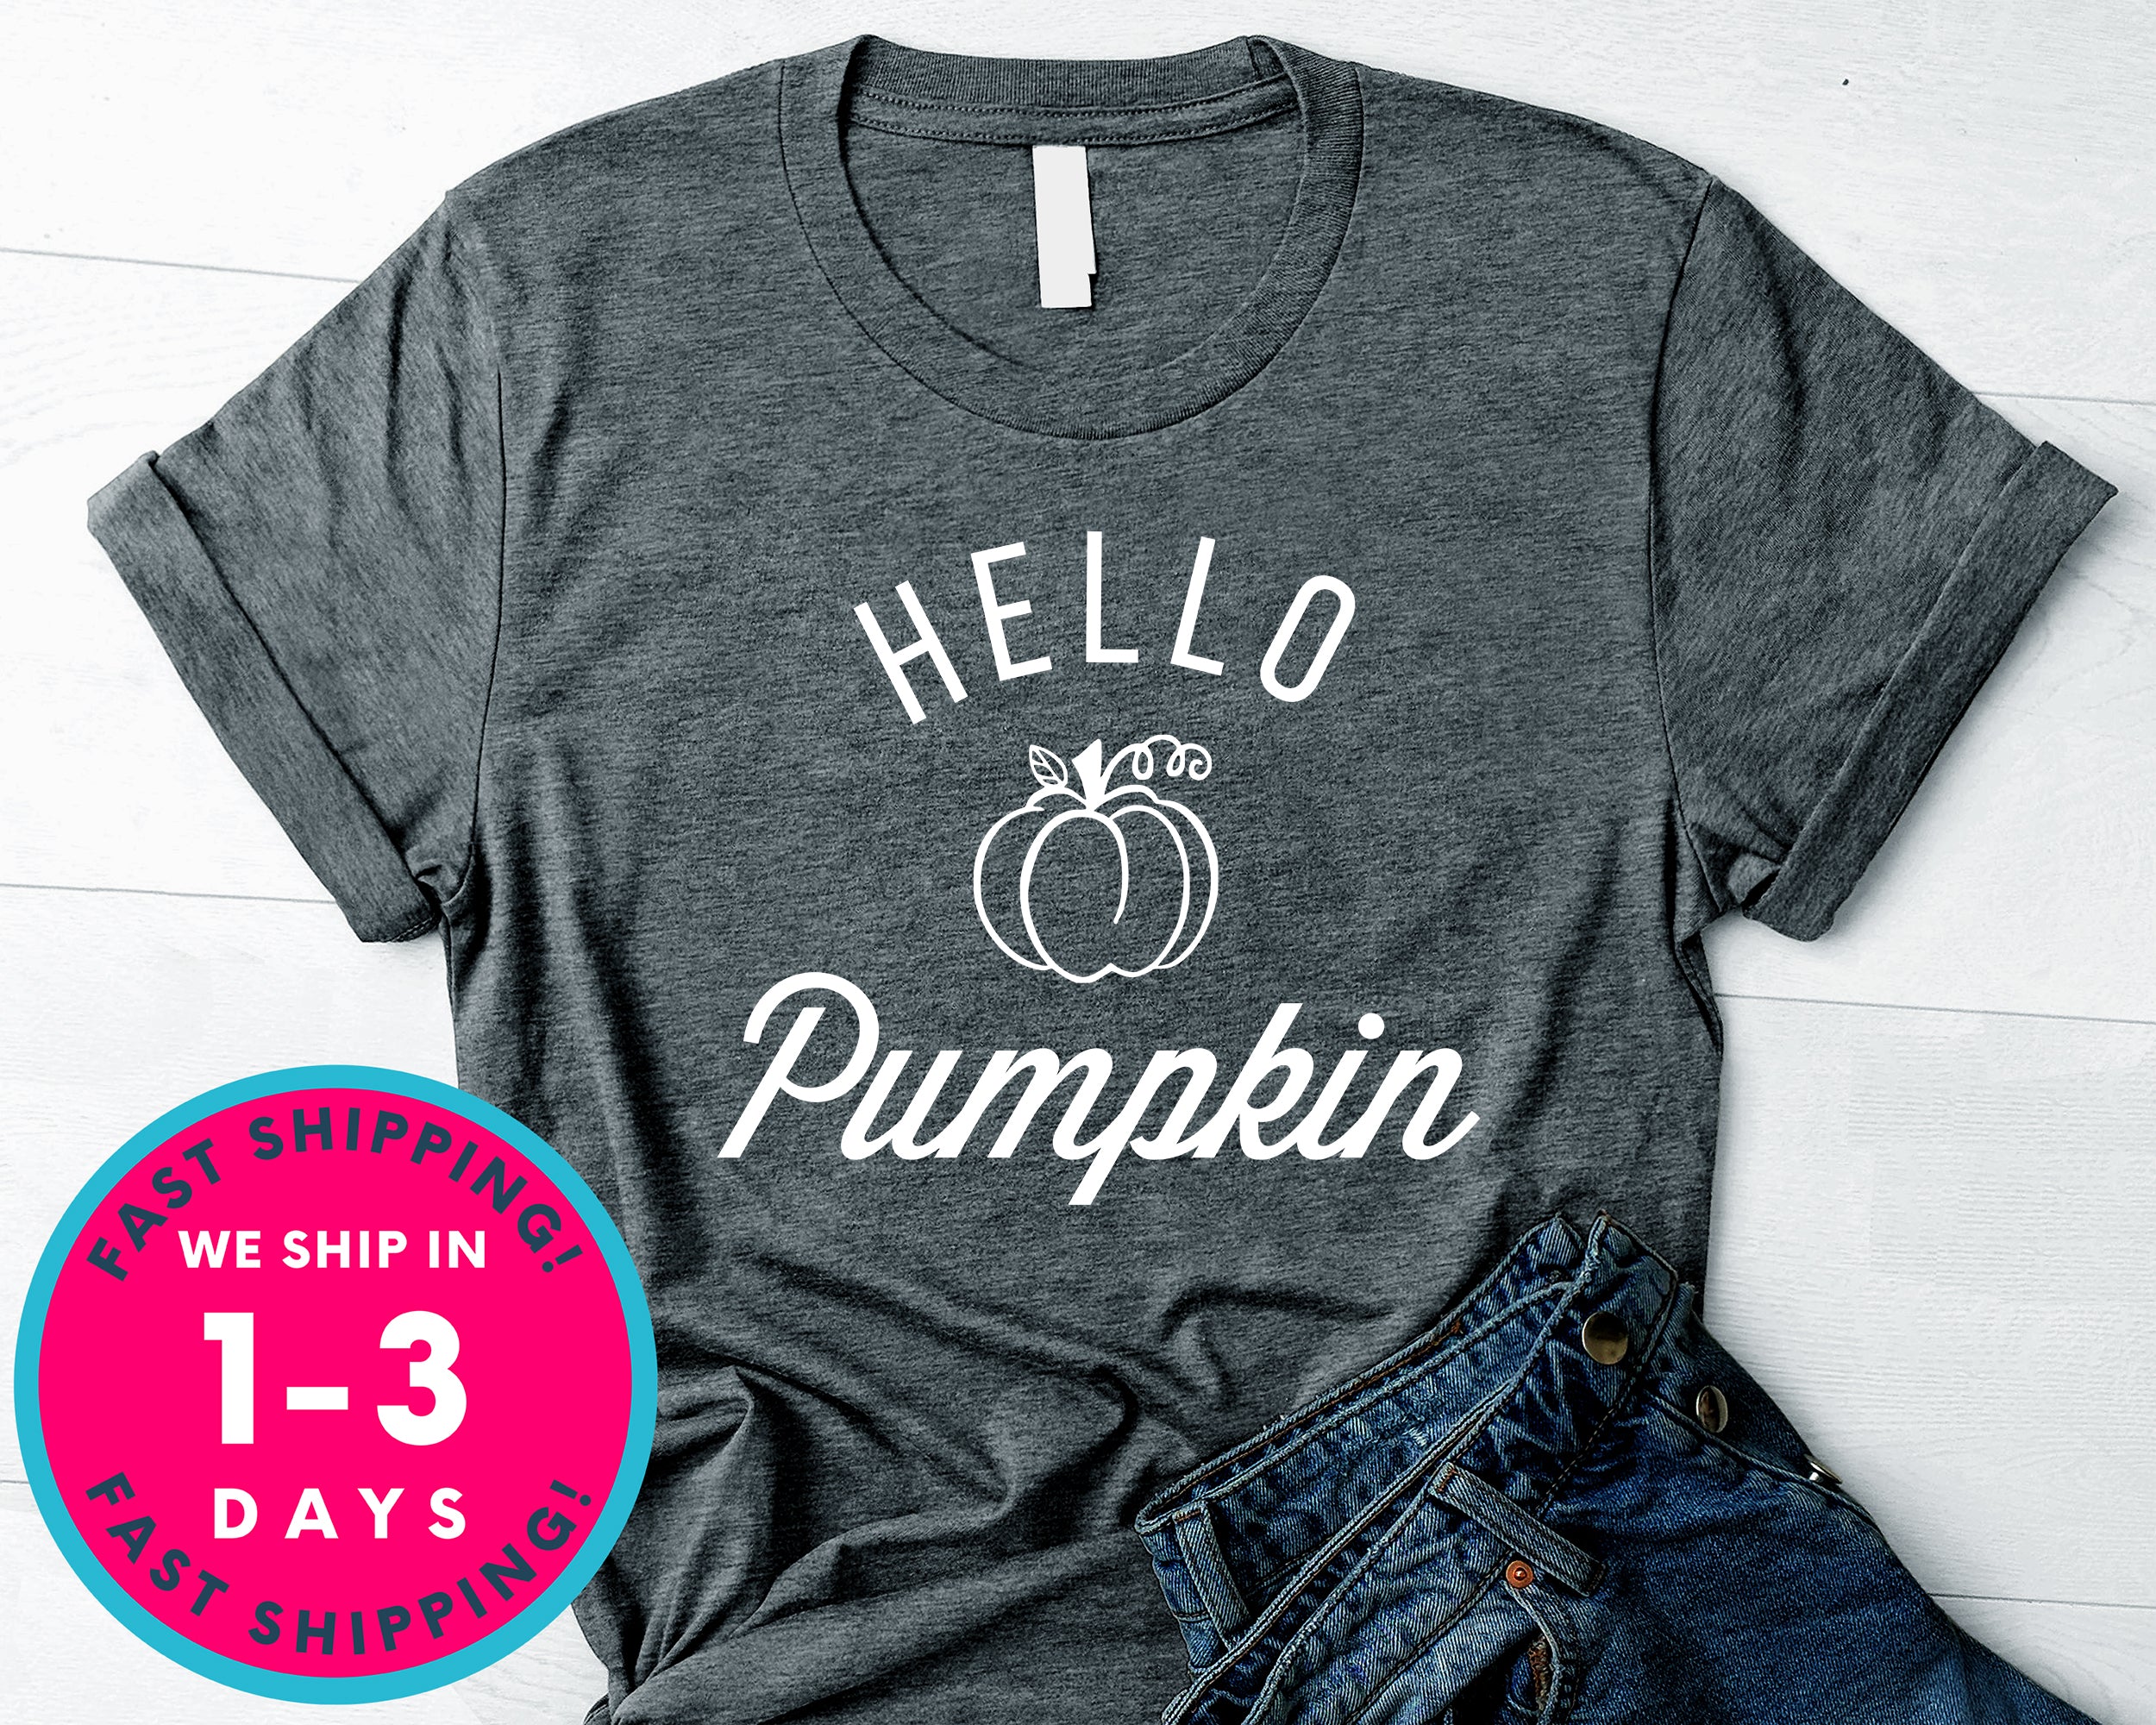 Hello Pumpkin T-Shirt - Autmn Fall Thanksgiving Shirt